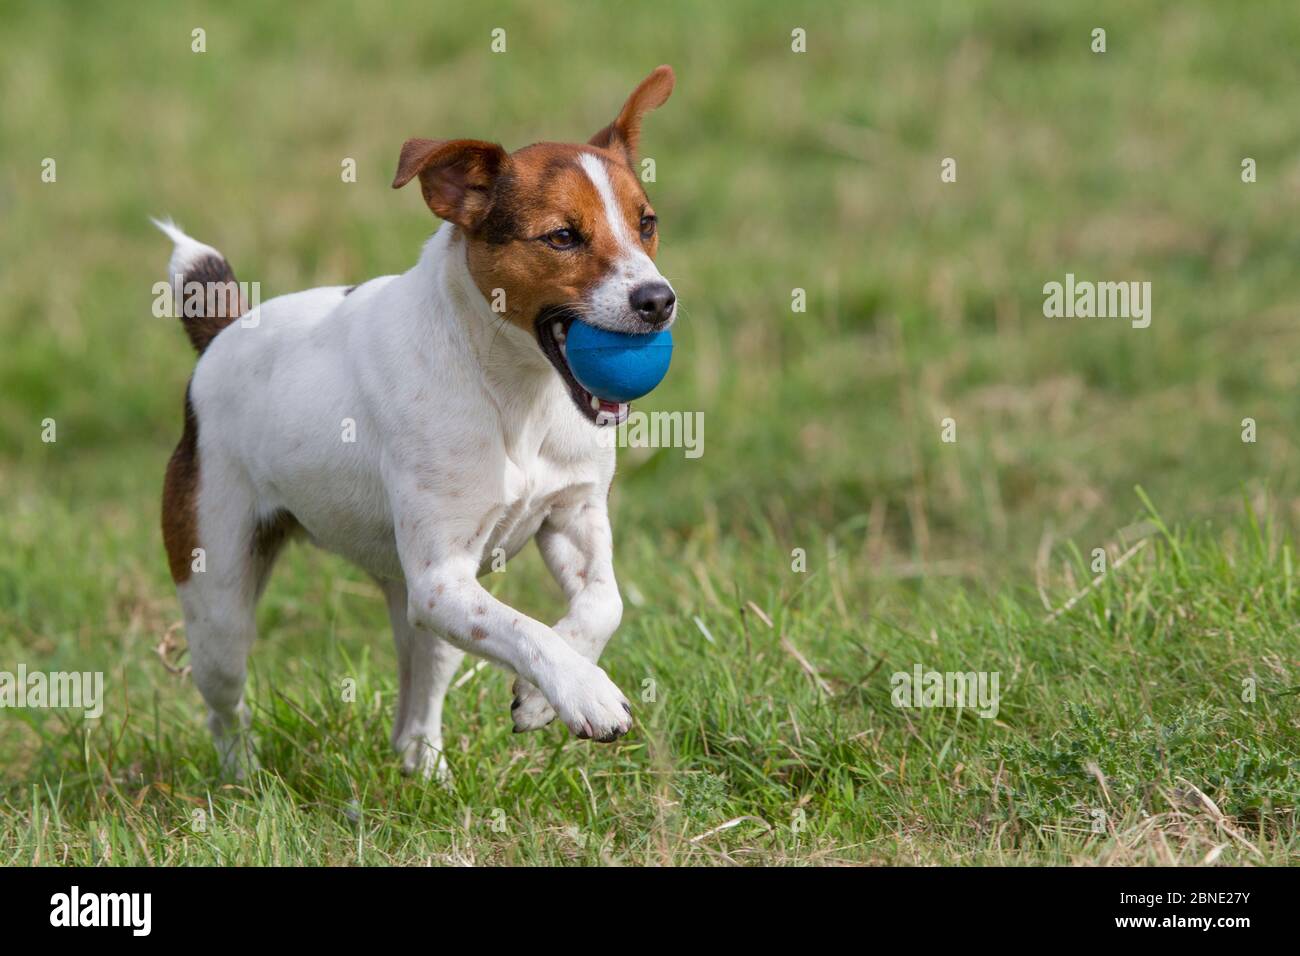 El joven Jack Russell terrier corriendo a través de un campo llevando una bola azul en su boca, Redbrook, Monmouthshire, Gales, Reino Unido, Agosto. Foto de stock